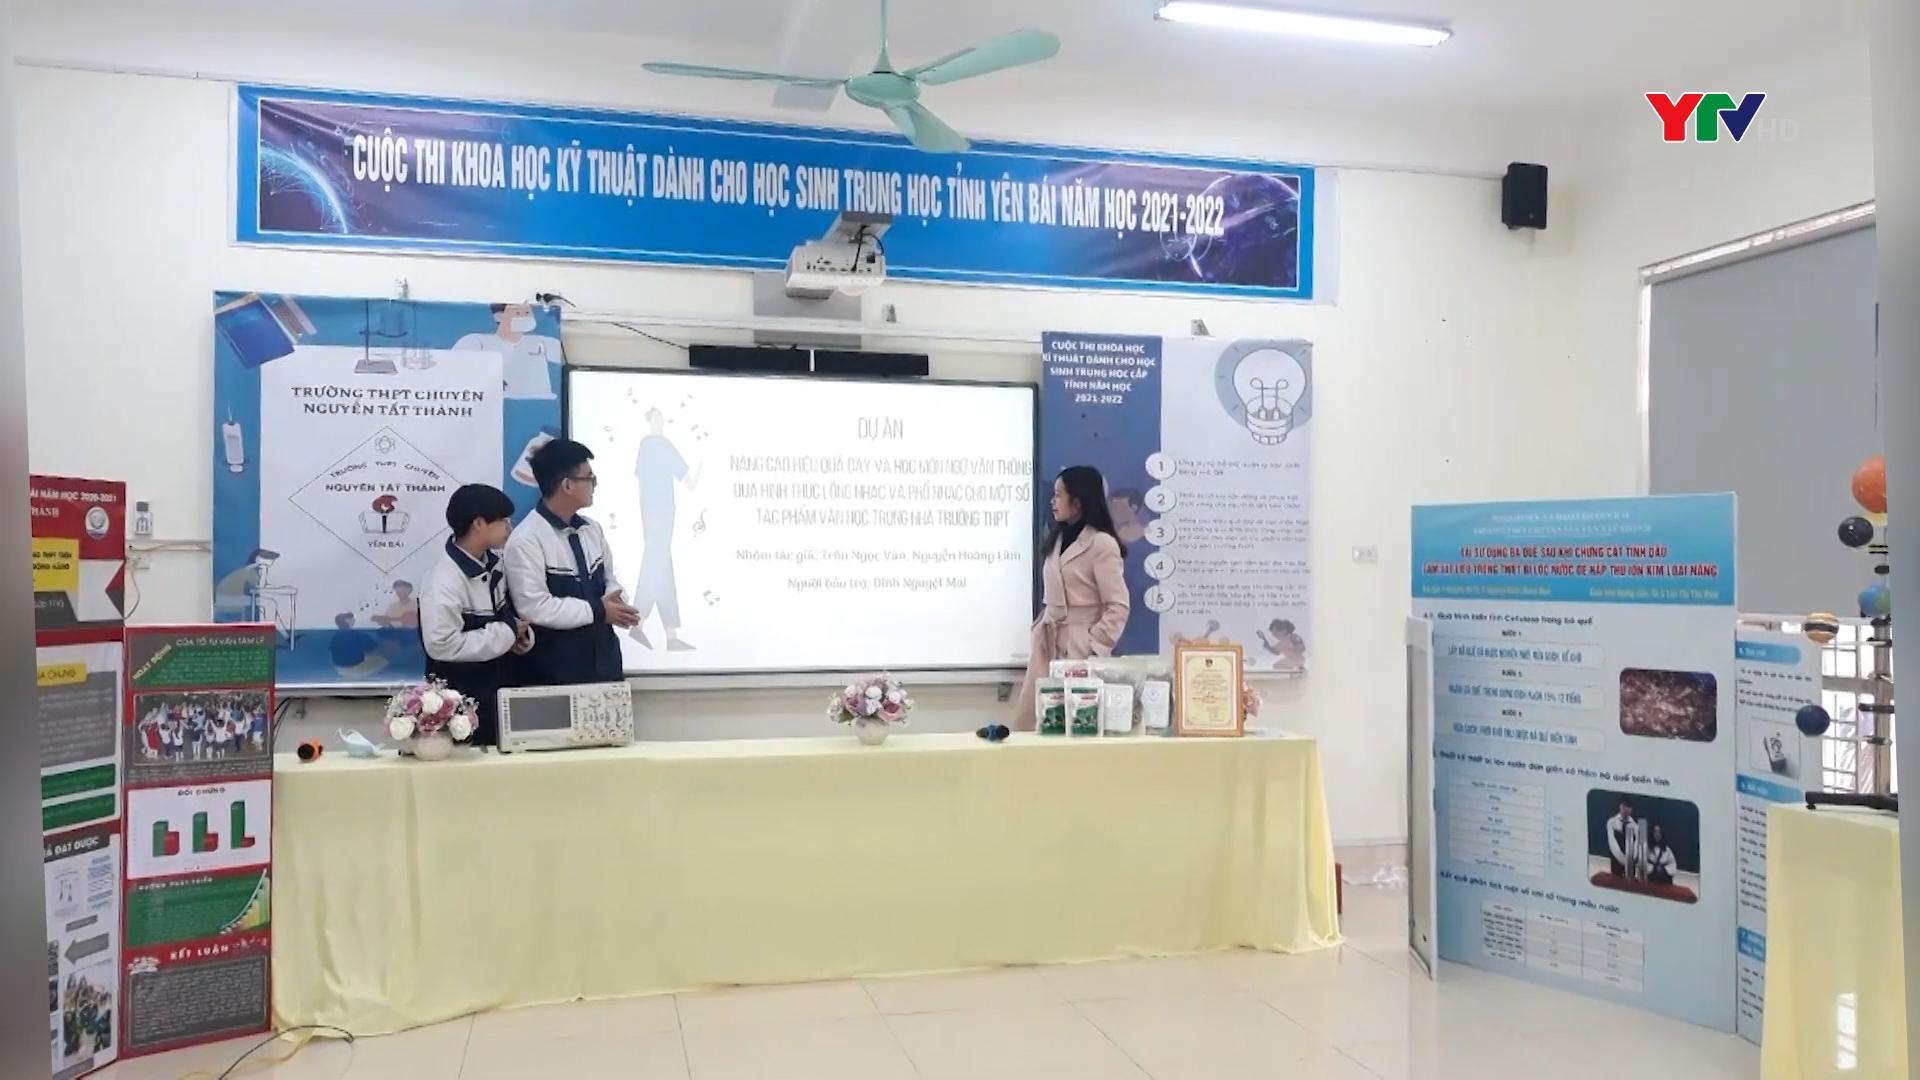 Trường THPT Chuyên Nguyễn Tất Thành đạt giải cao trong Cuộc thi KHKT cấp tỉnh, năm học 2021-2022